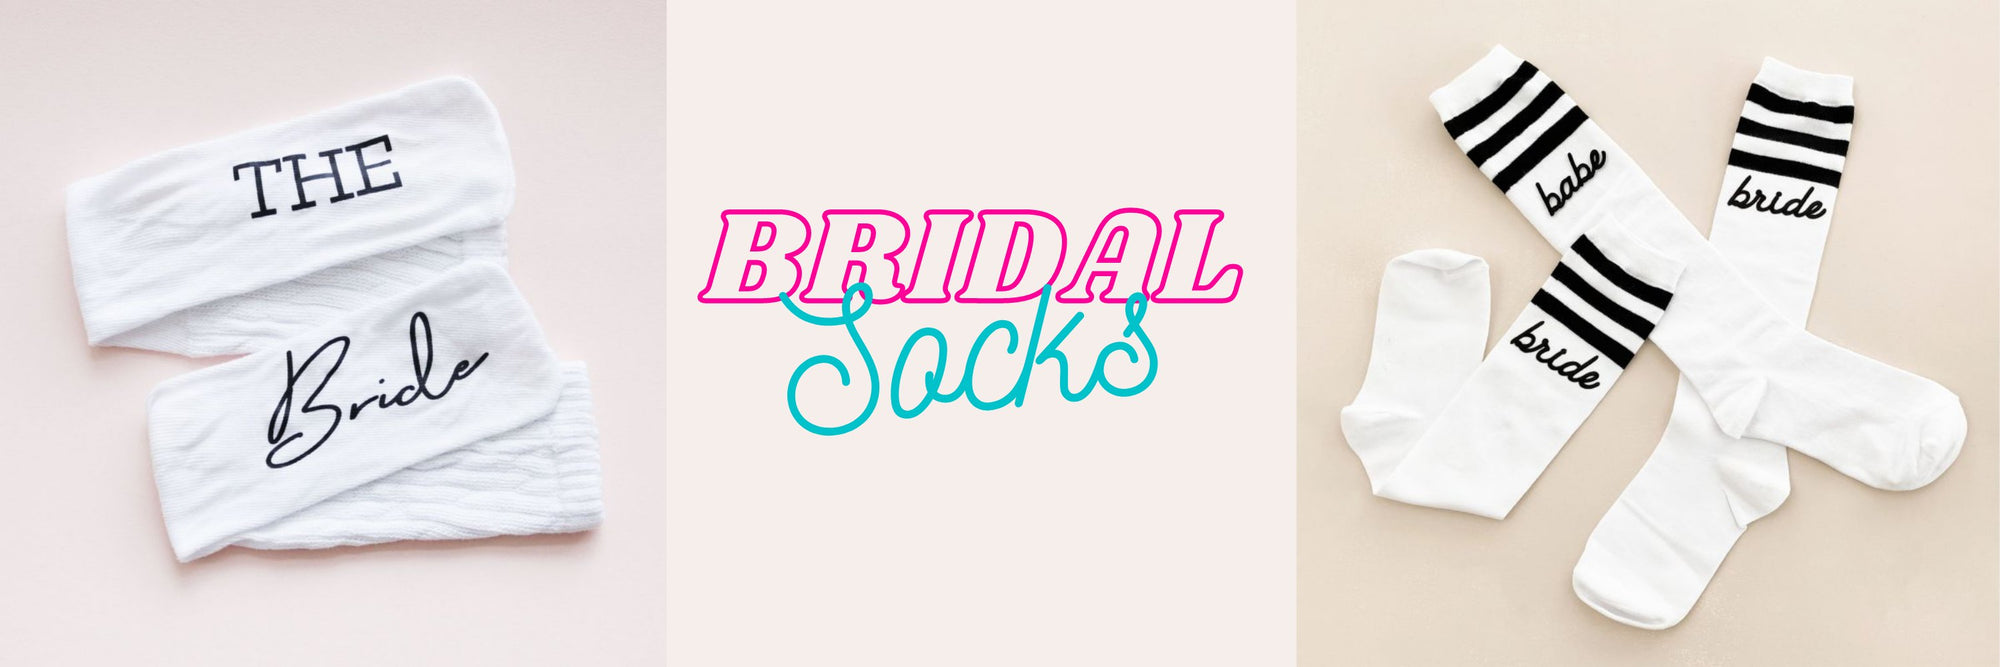 Bridesmaid Socks | Bride Socks